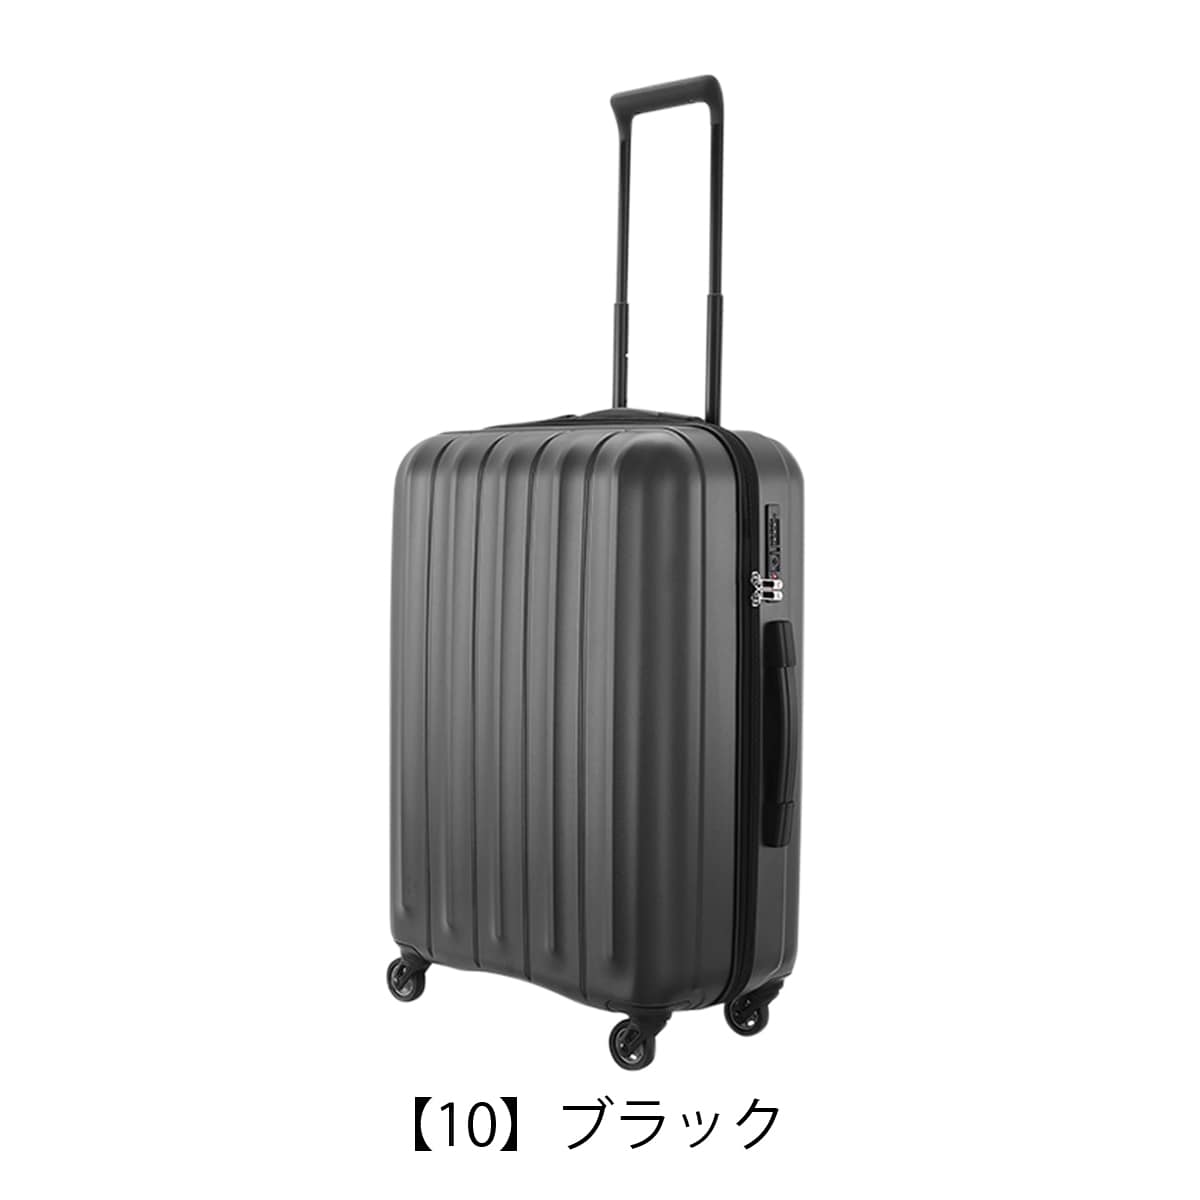 サンコー スーツケース 53L 58cm 2.3kg キャリーケース SLZ6-58 極軽 SUNCO TSAロック搭載 ハードキャリー 軽量 抗菌  静音キャスター